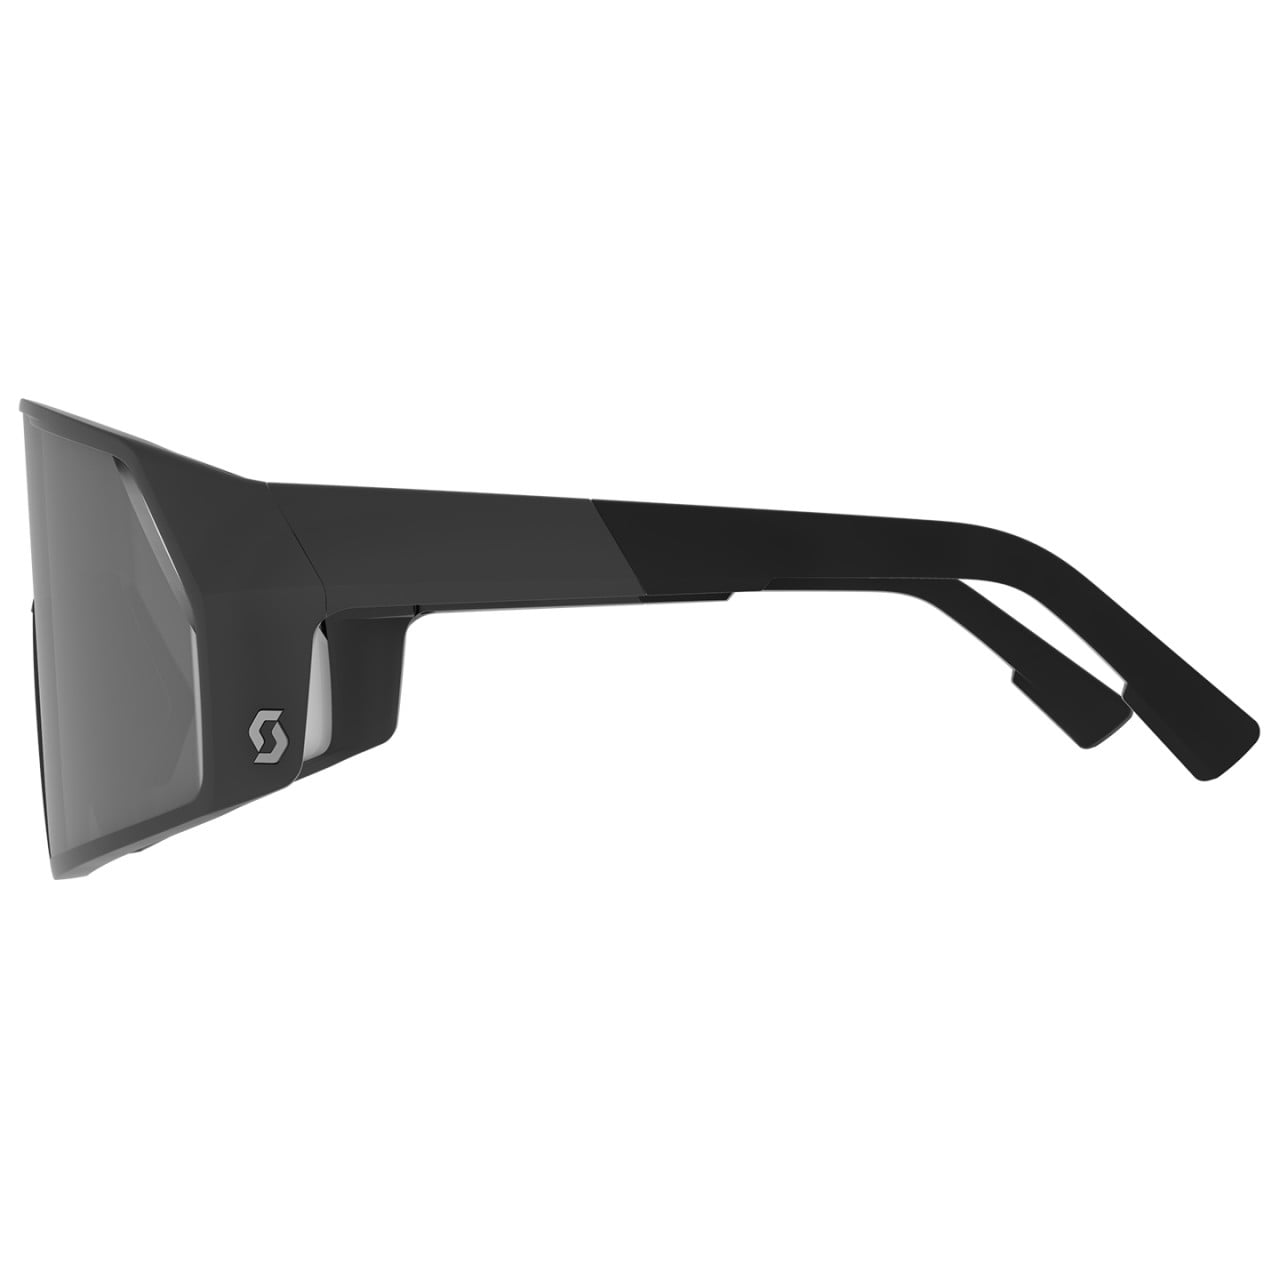 Pro Shield Light Sensitive Cycling Eyewear